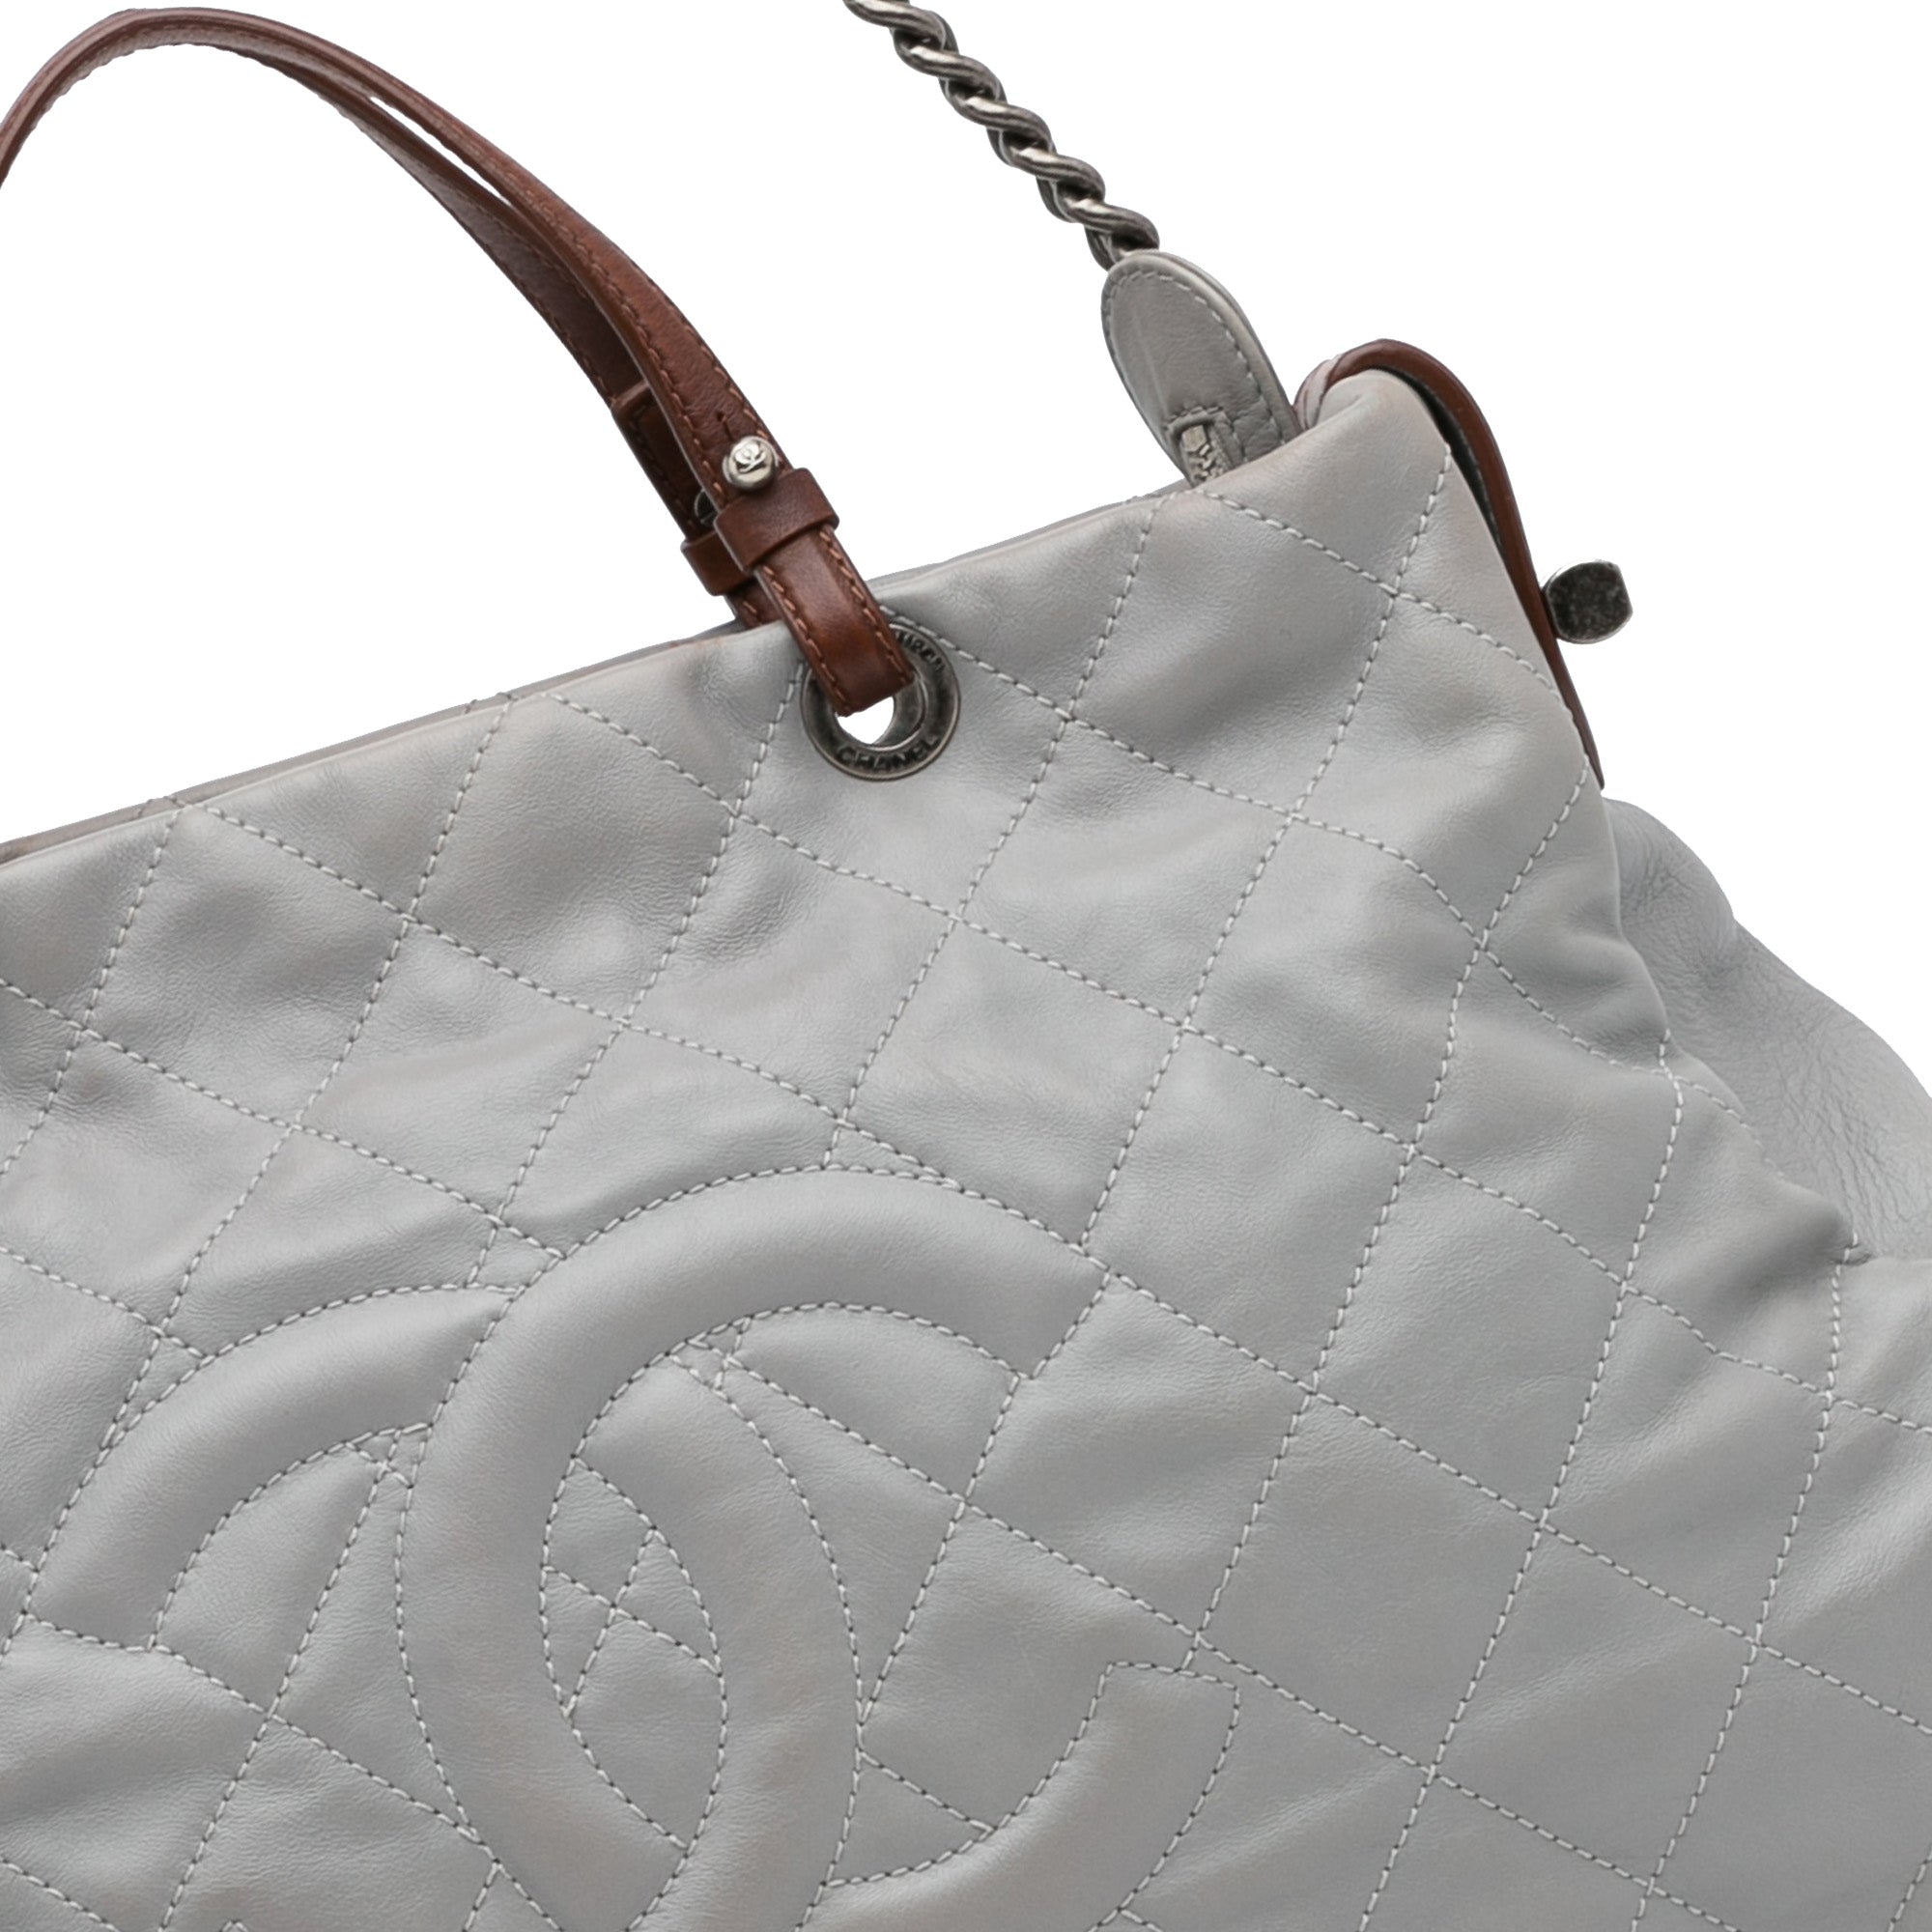 Chanel Chic Quilt Lambskin Leather Shoulder Bag (SHG-34319